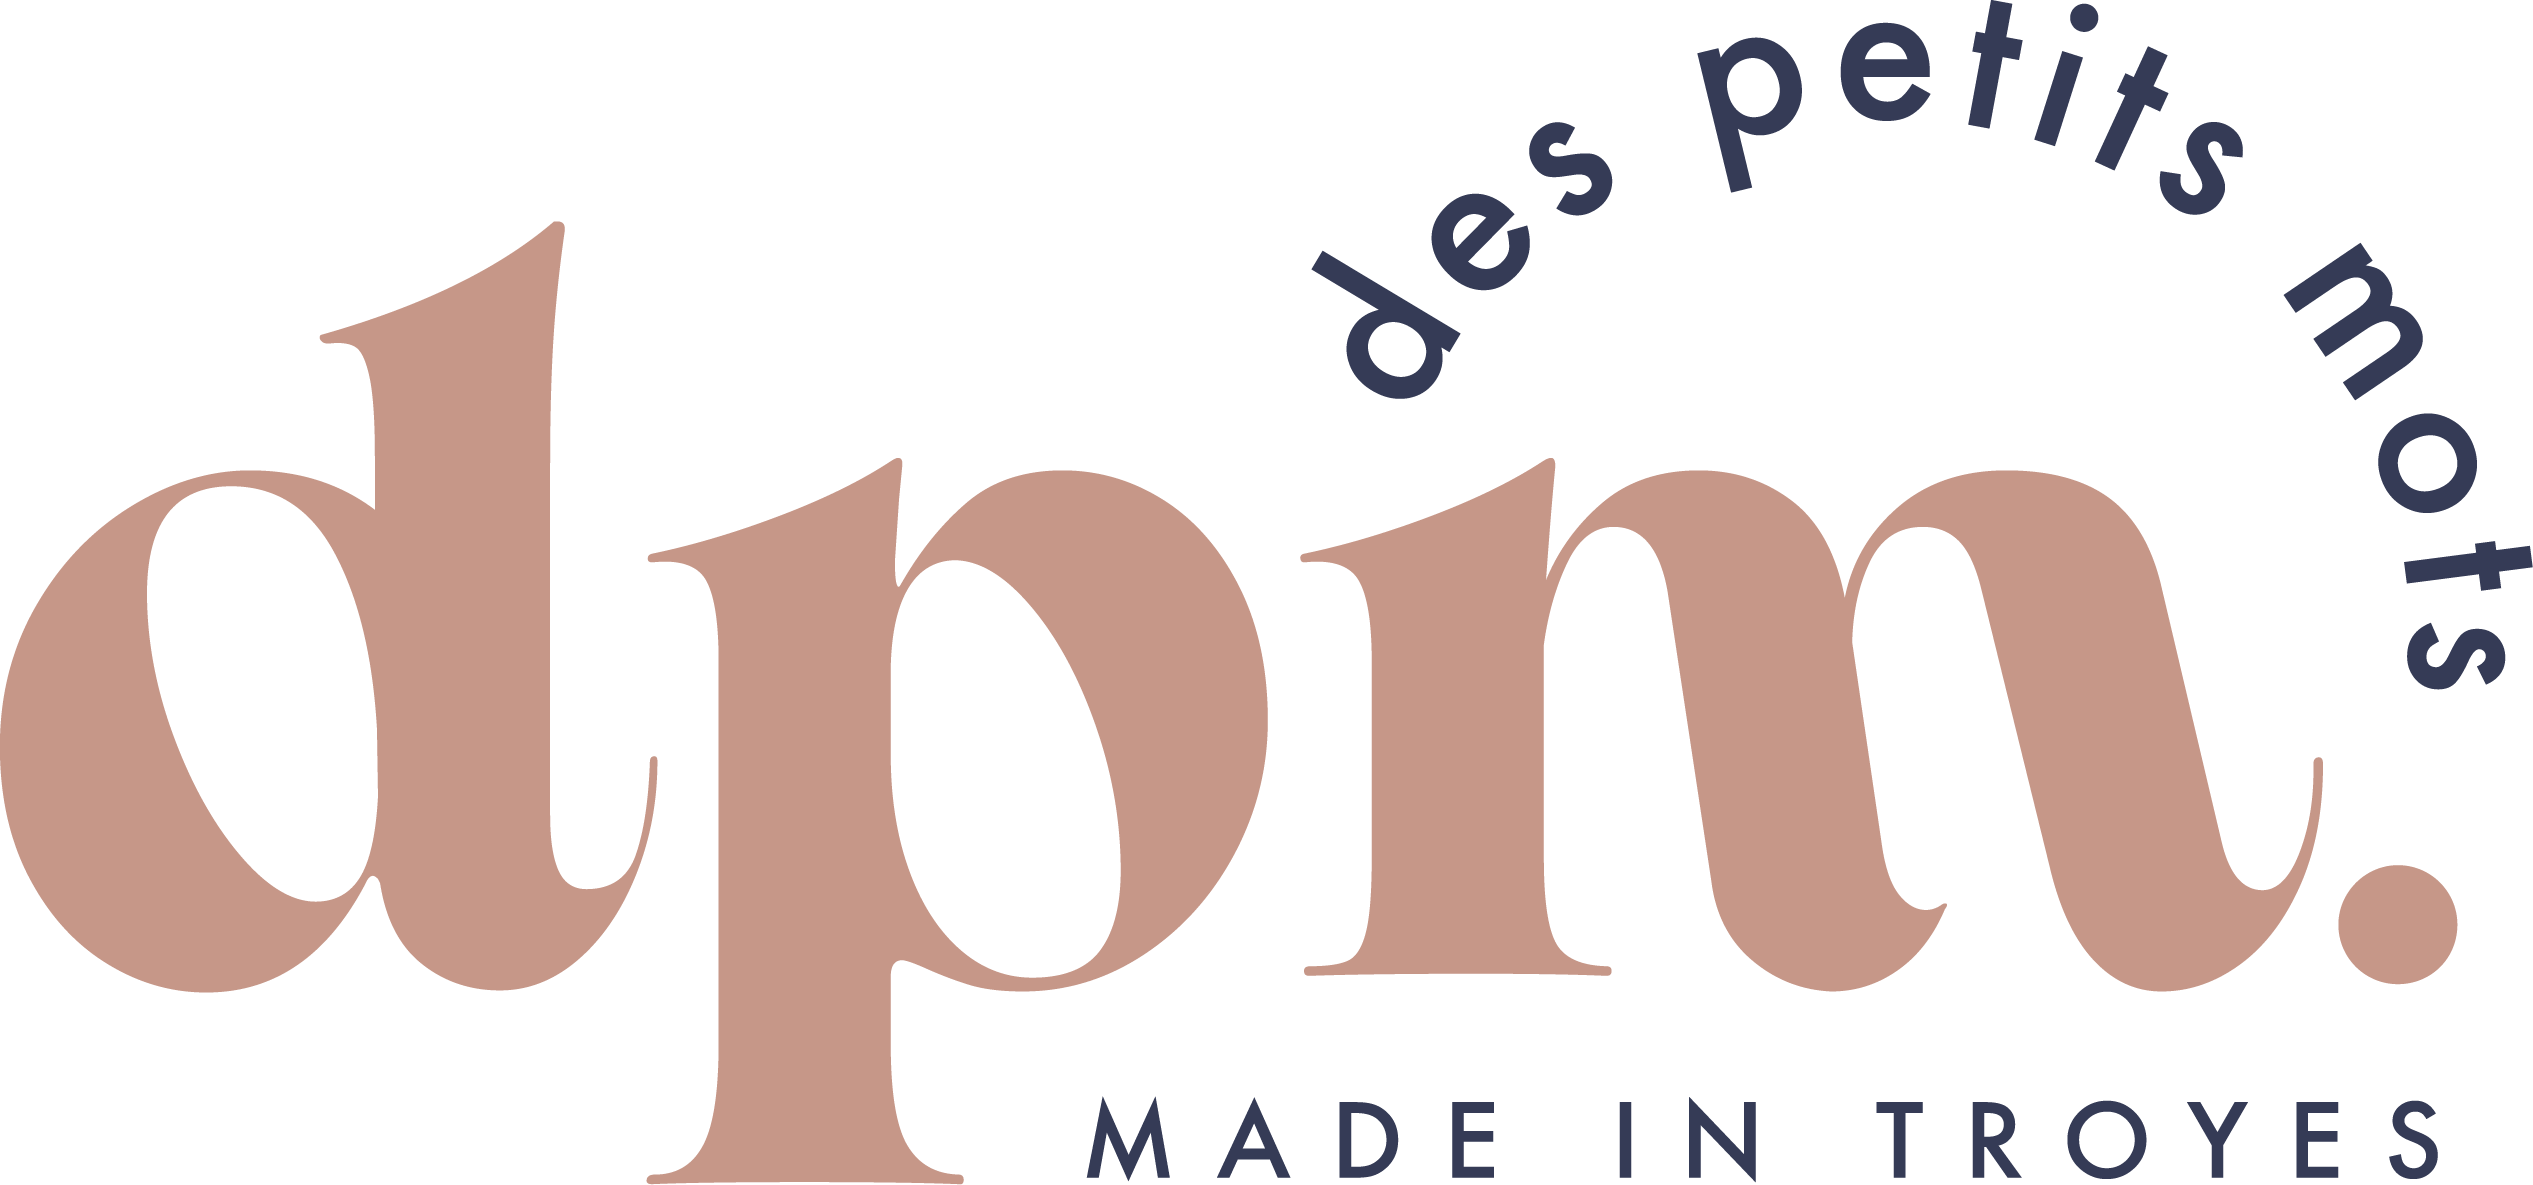 Des Petits Mots - Bijoux, maroquinerie et décoration fabriqués en France